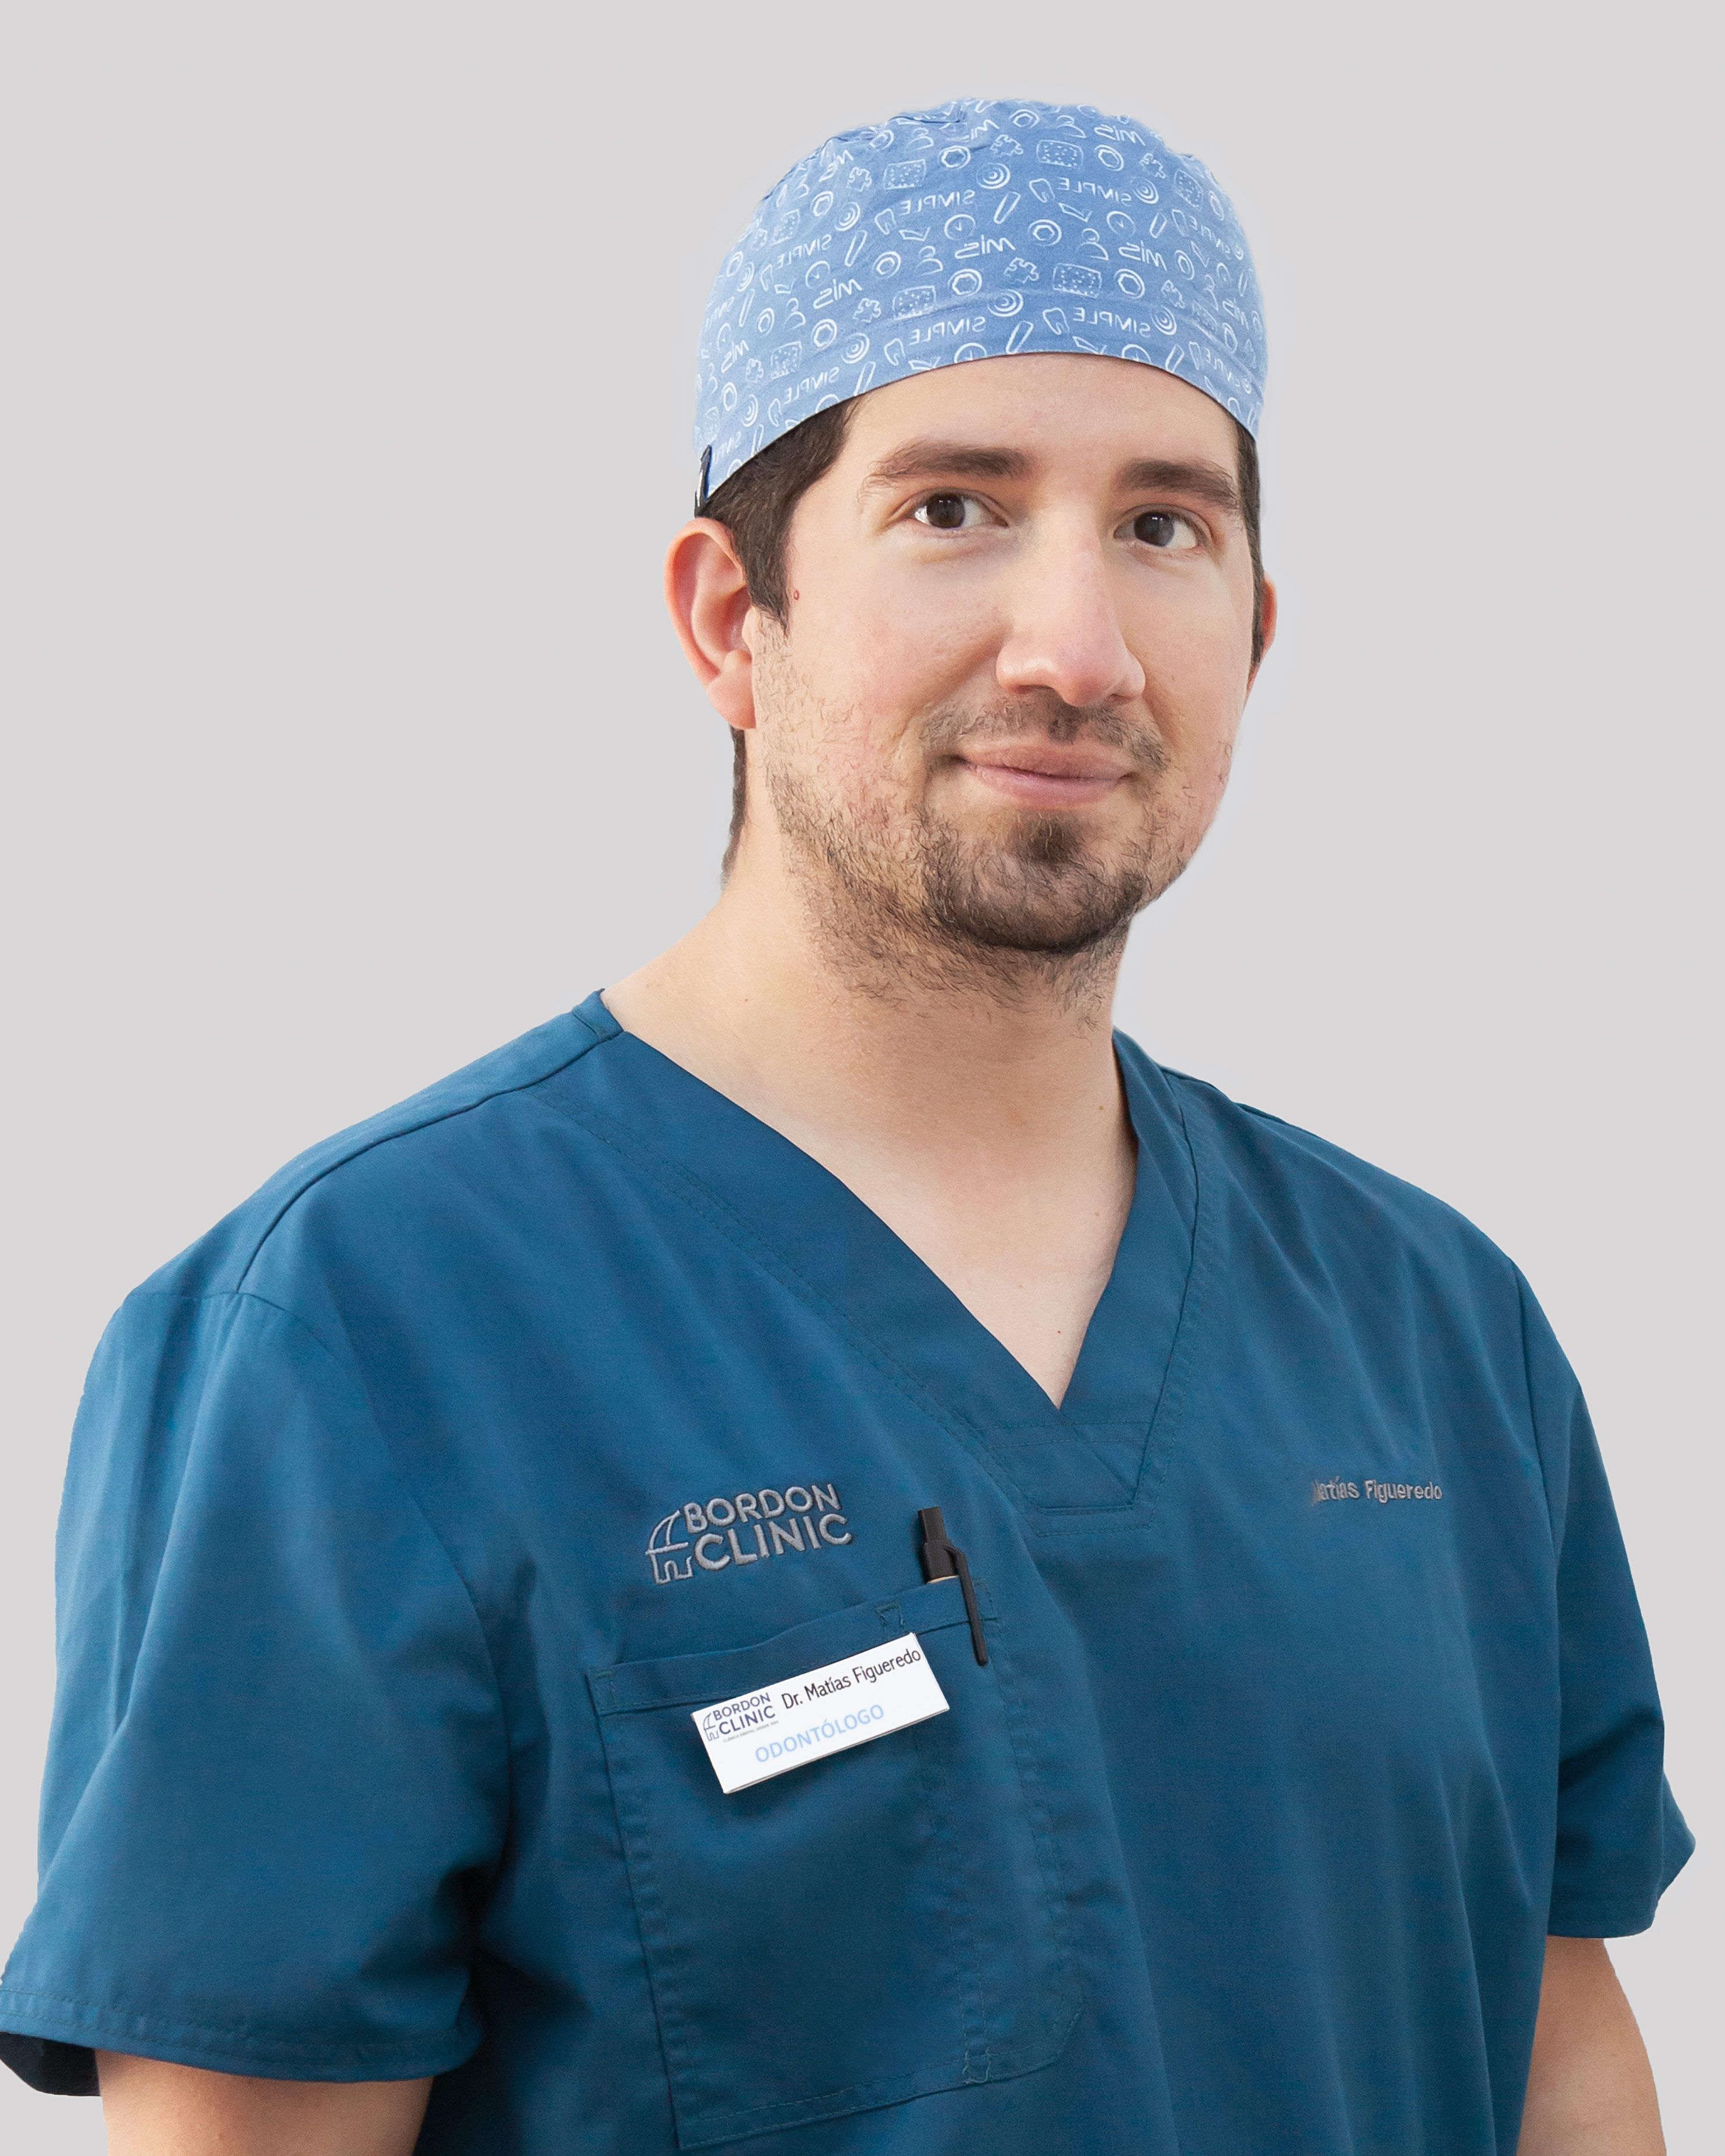 Dr. Matías Figueredo | BordonClinic